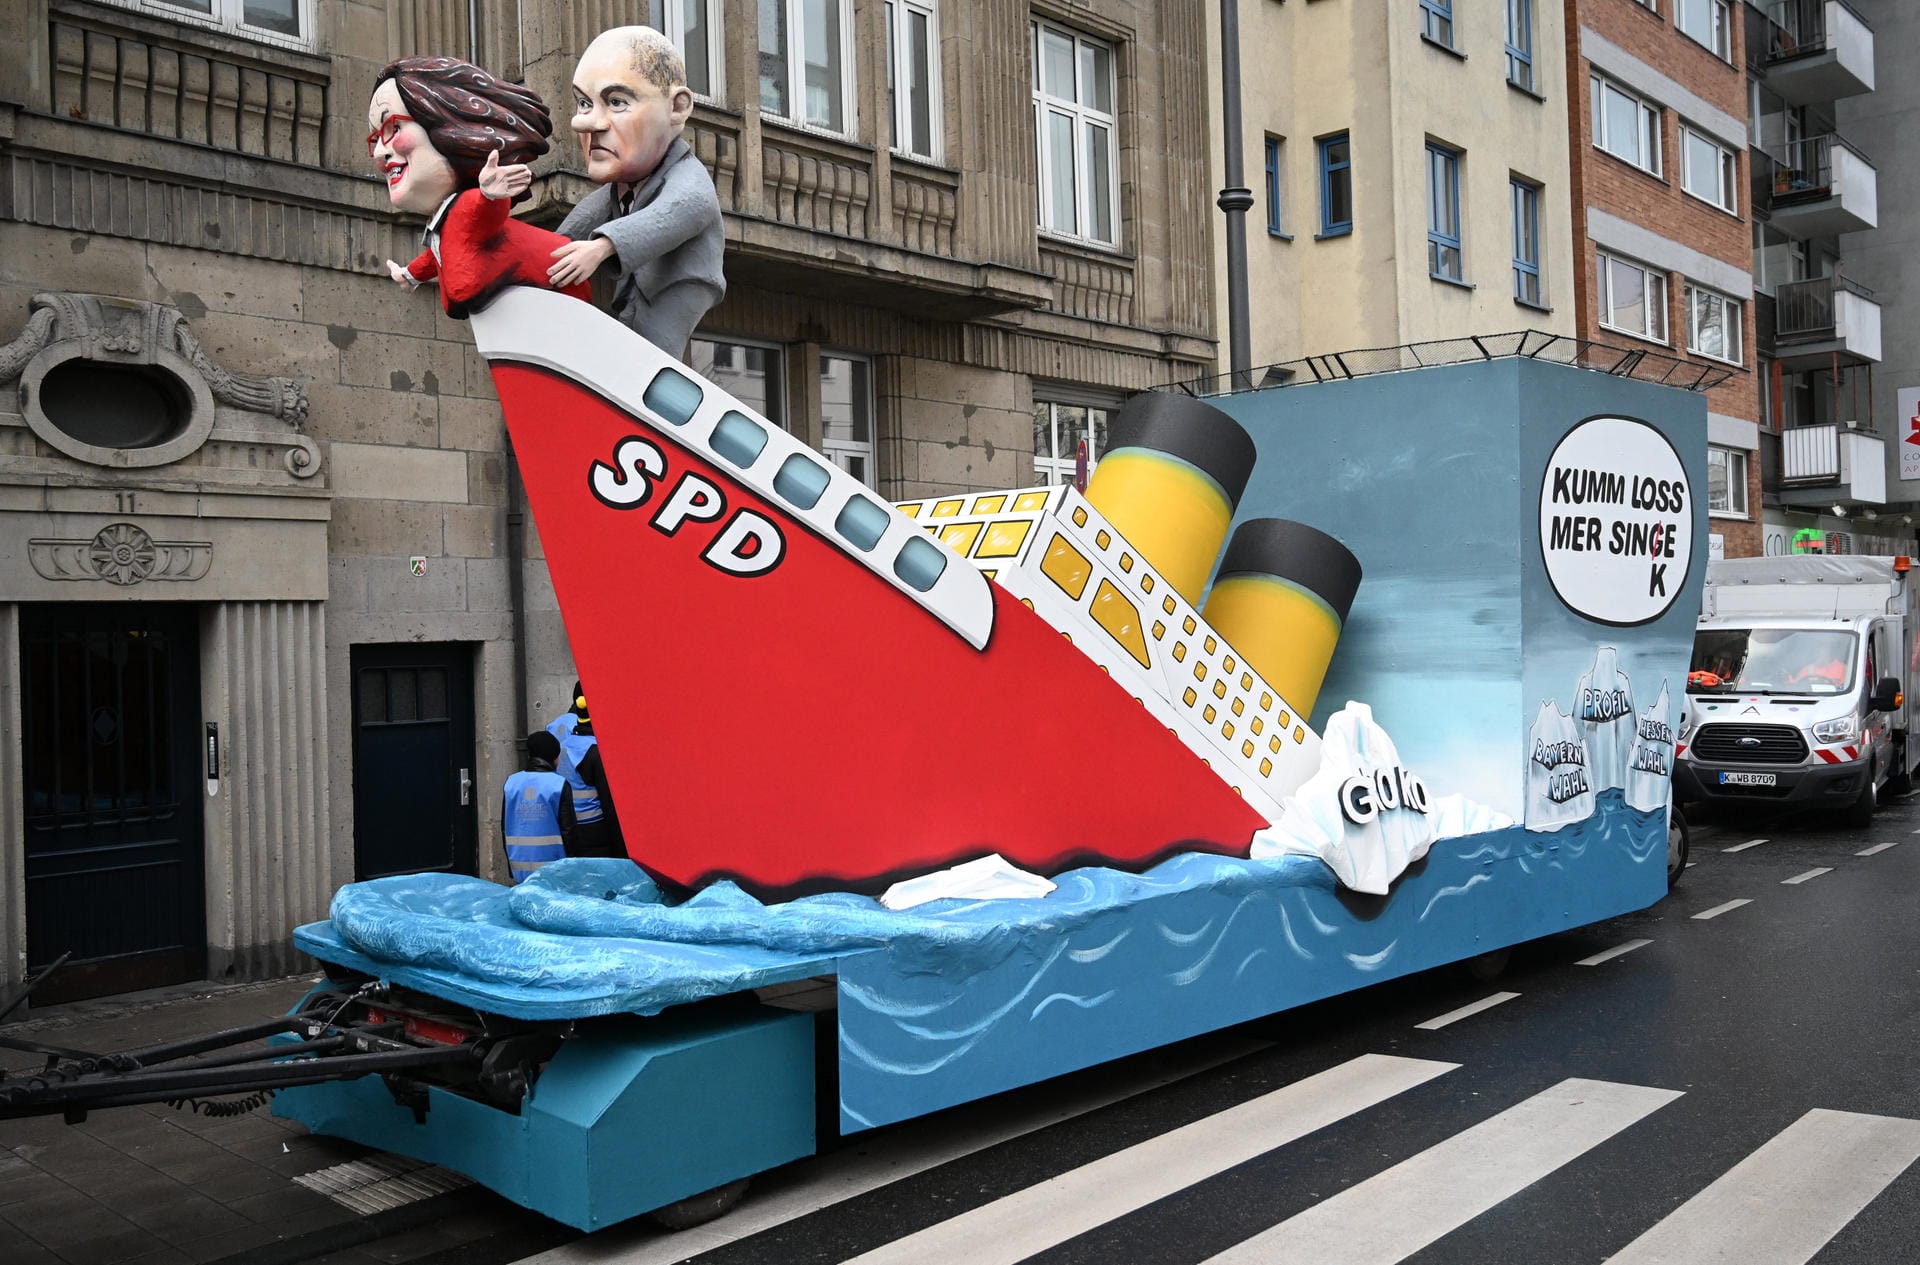 Erster Blick auf einen Motivwagen in Köln: SPD und Titanic scheinen gut zu passen.